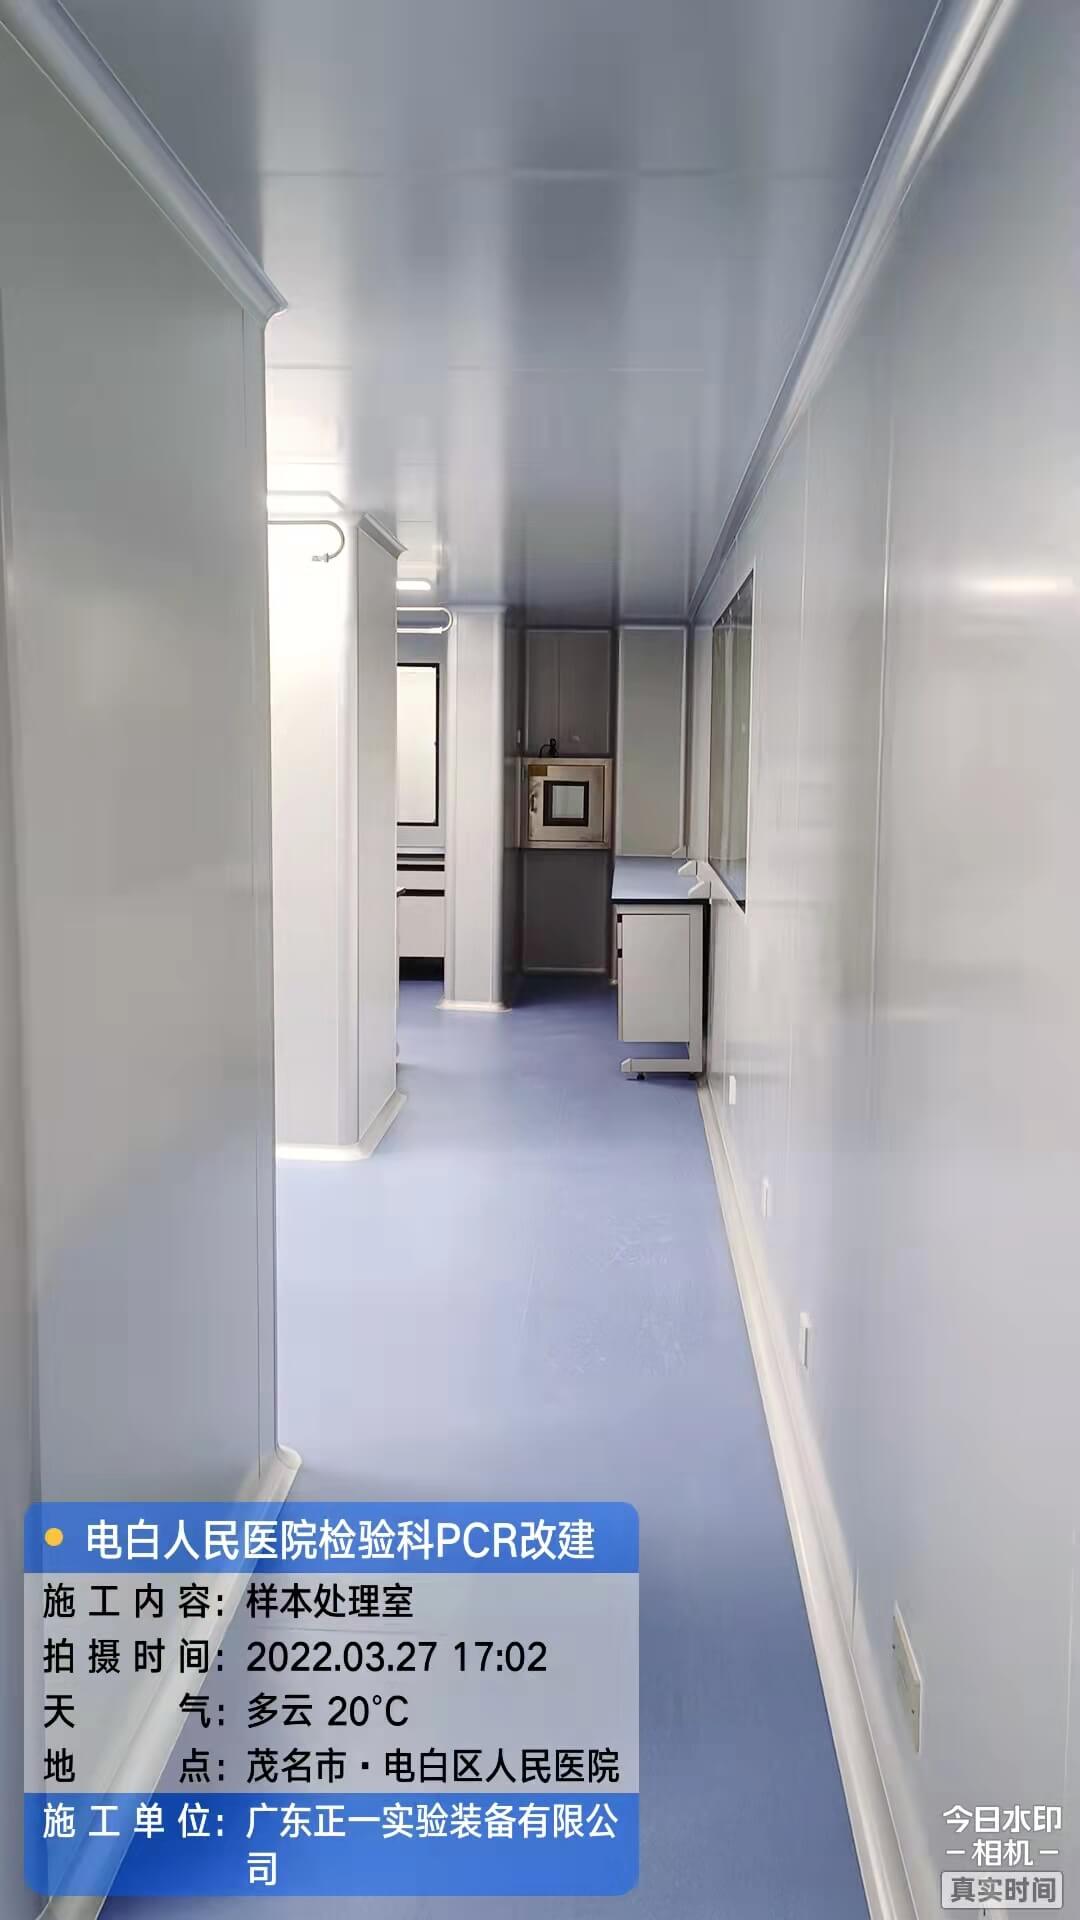 茂名市电白区人民医院外科综合楼12、13层改建检验科及PCR实验室工程 (22)